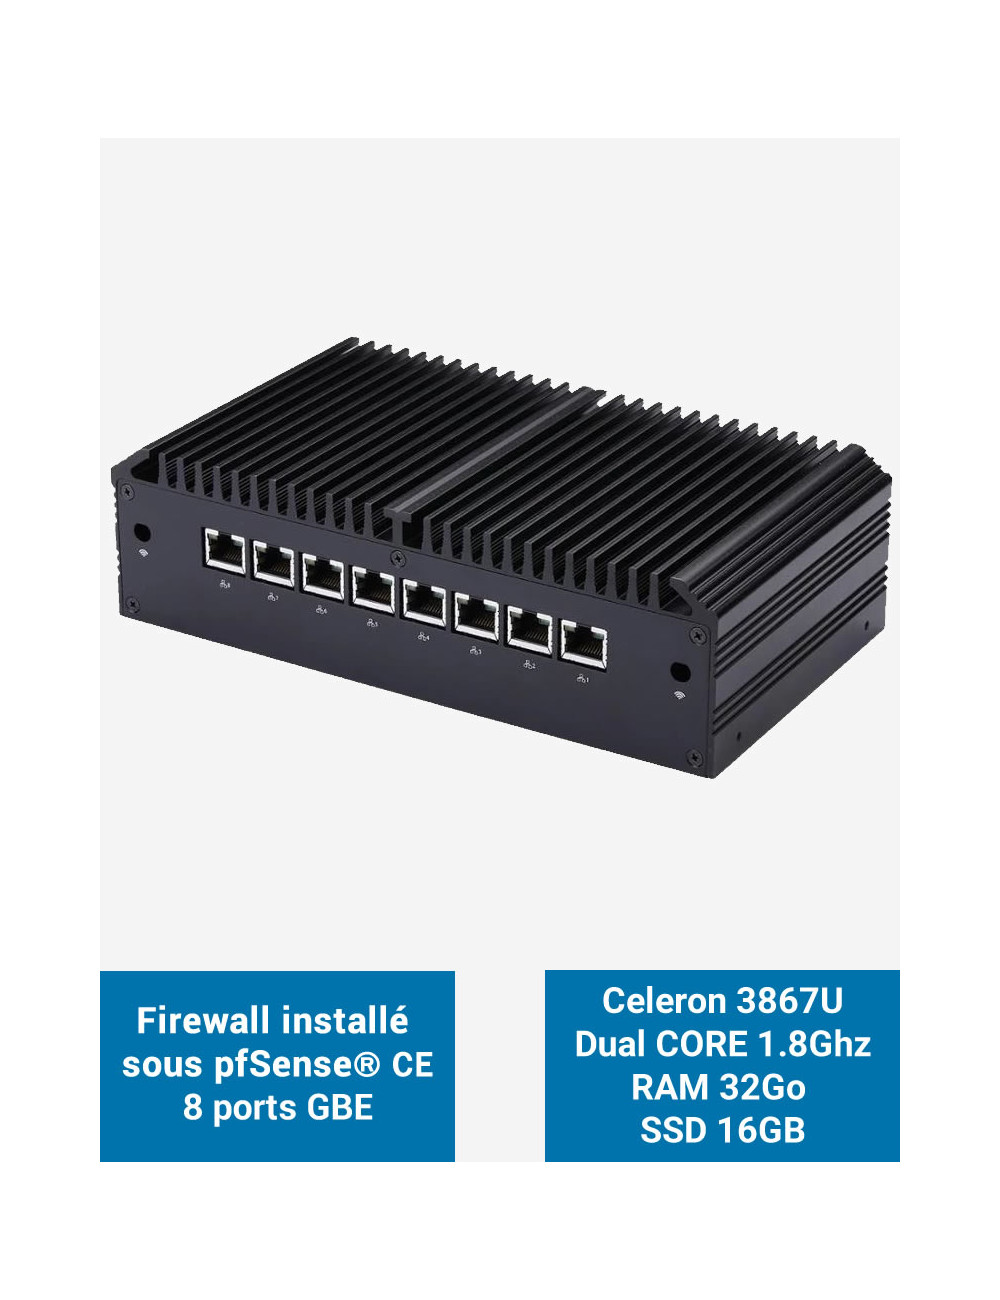 Firewall Q8x Celeron 3867U 8 ports GbE 32GB 16GB